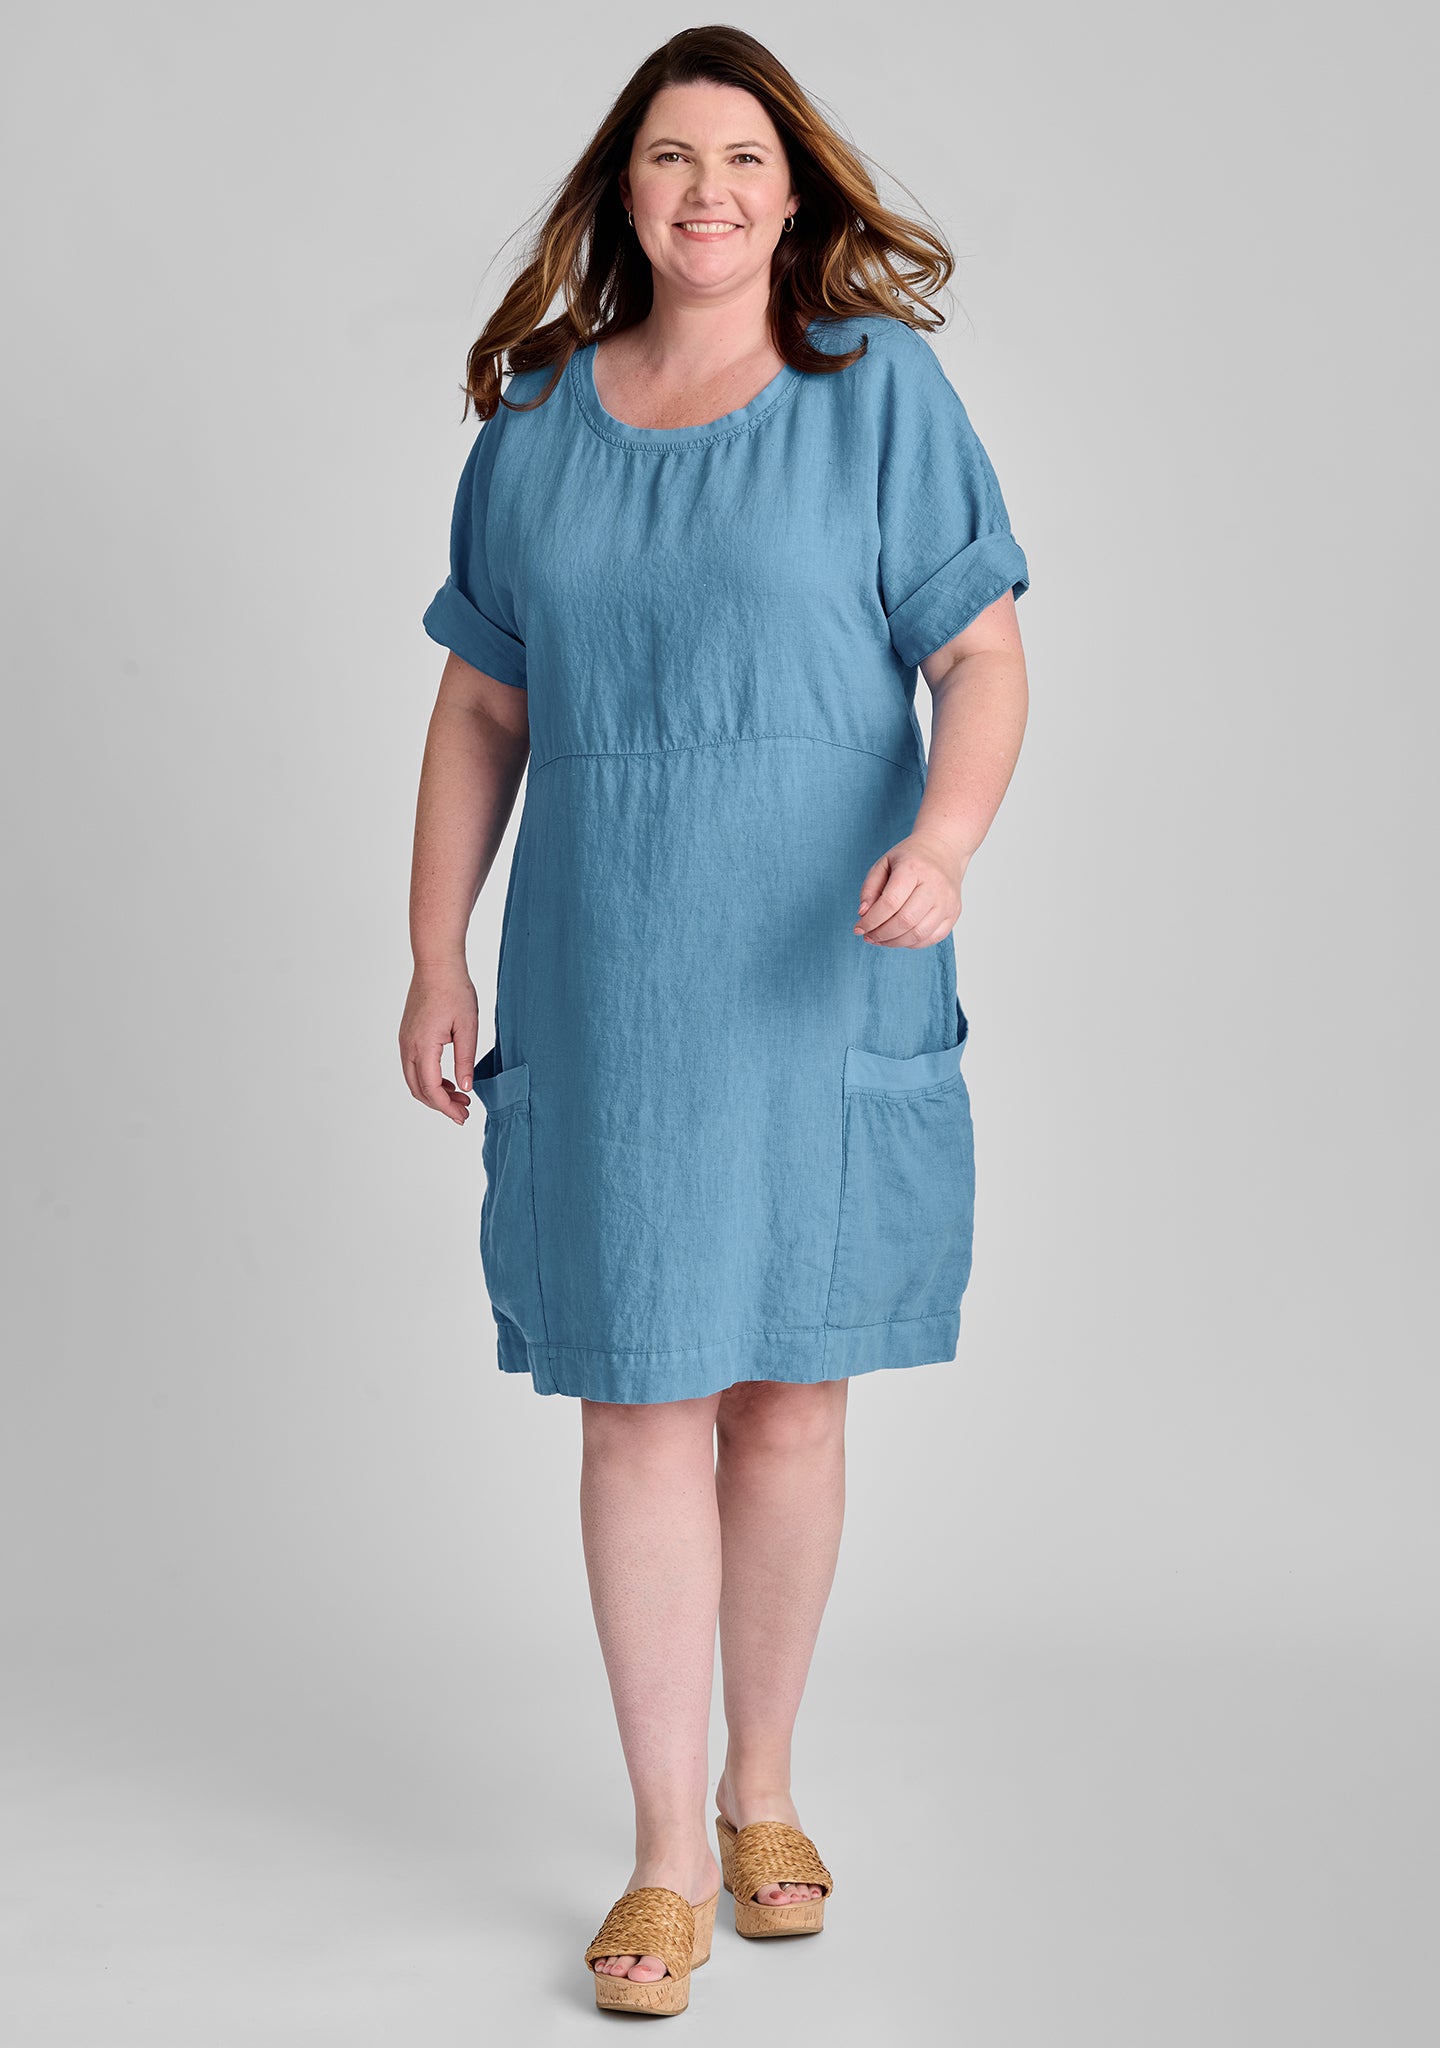 Linen Square Neck Dress ESTHER Vintage Inspired Linen Dress - Etsy Canada |  Square neck dress, Linen mini dress, Linen dress